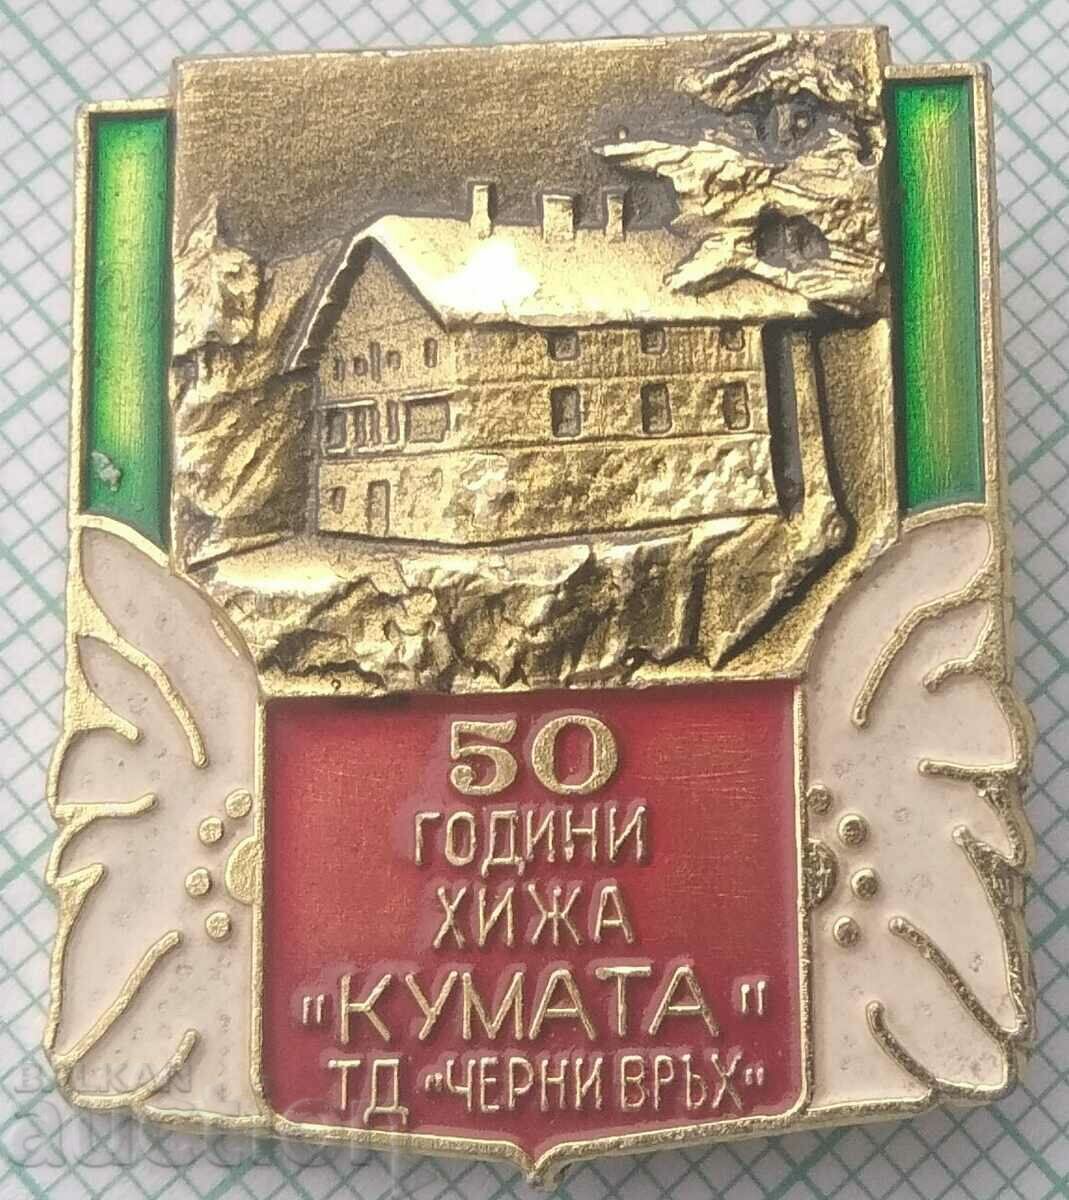 15040 Asociatia Turistica Cherni Vrah - 50g cabana Kumata